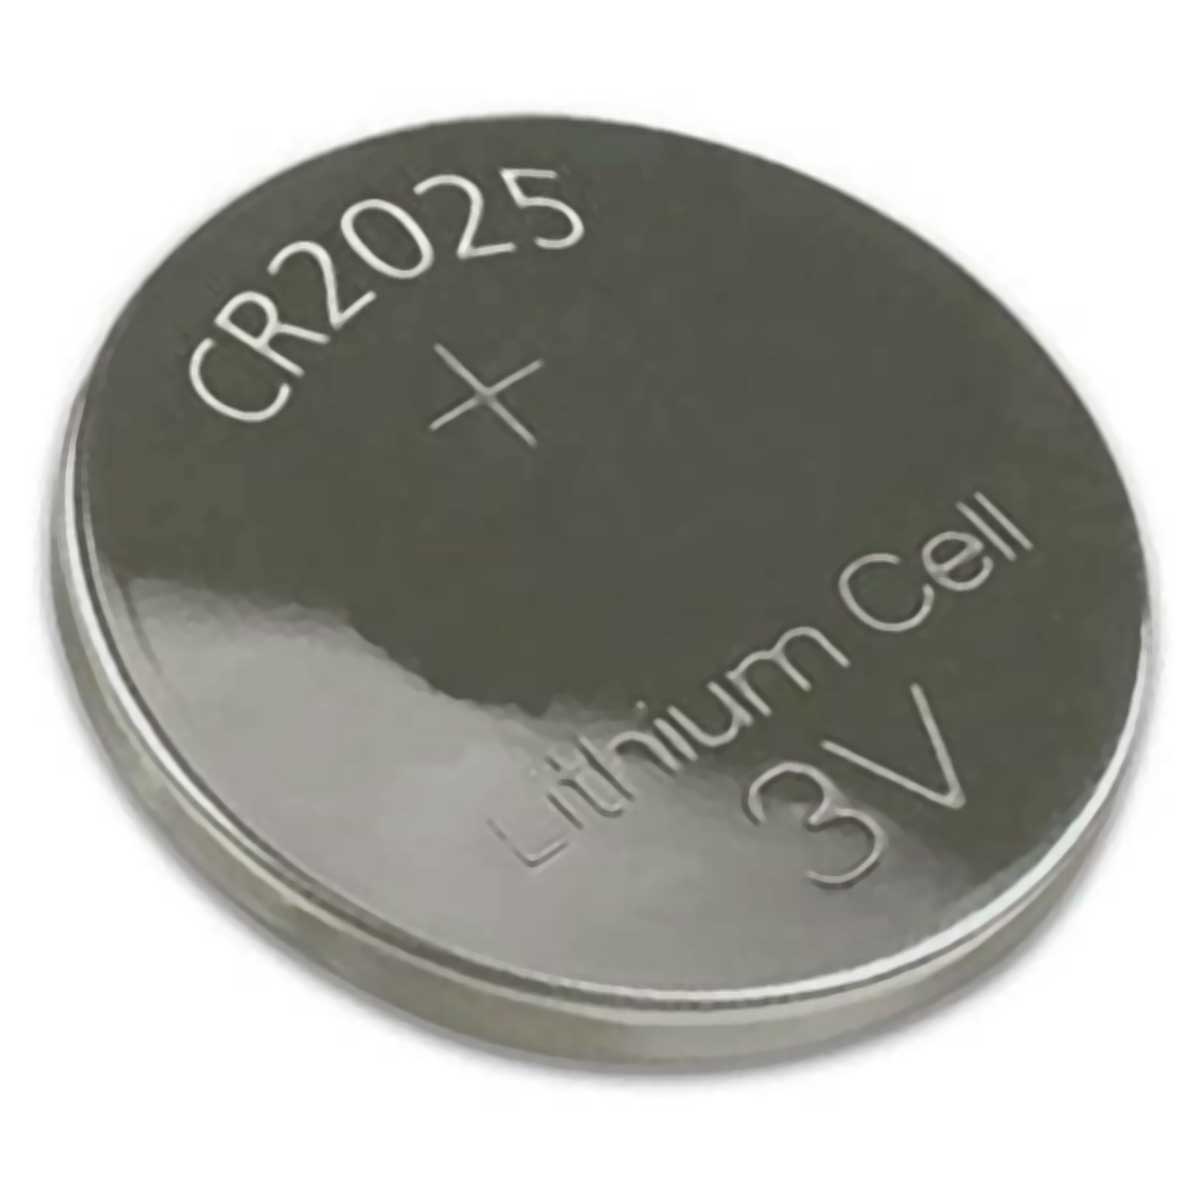 Bateria CR2025 Lithium 3V - tipo moeda - ALB64013 - Unidade - para alarmes automotivos, calculadoras e câmeras